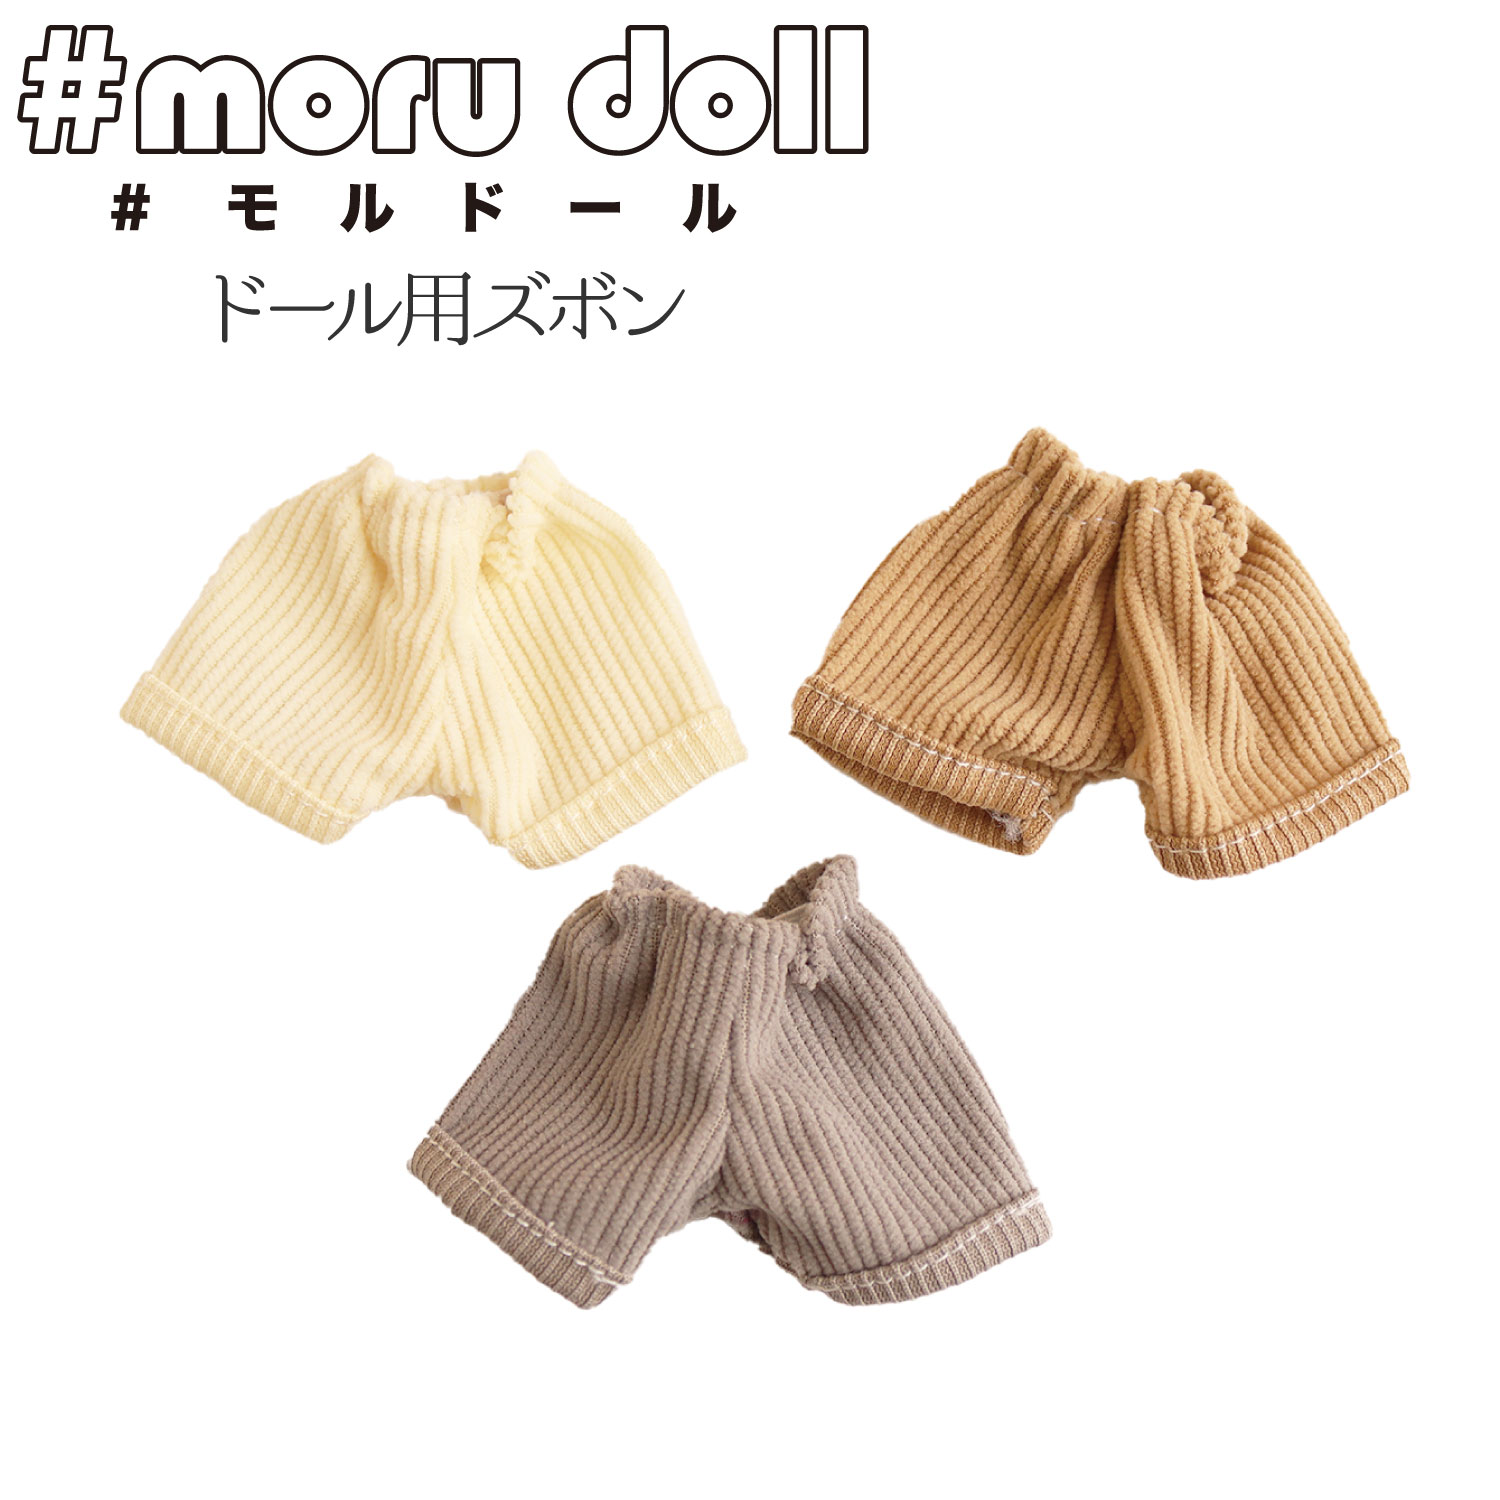 【キャンペーン対象】MOL モール人形 モールドール  モルドール用コーデュロイズボン (袋)